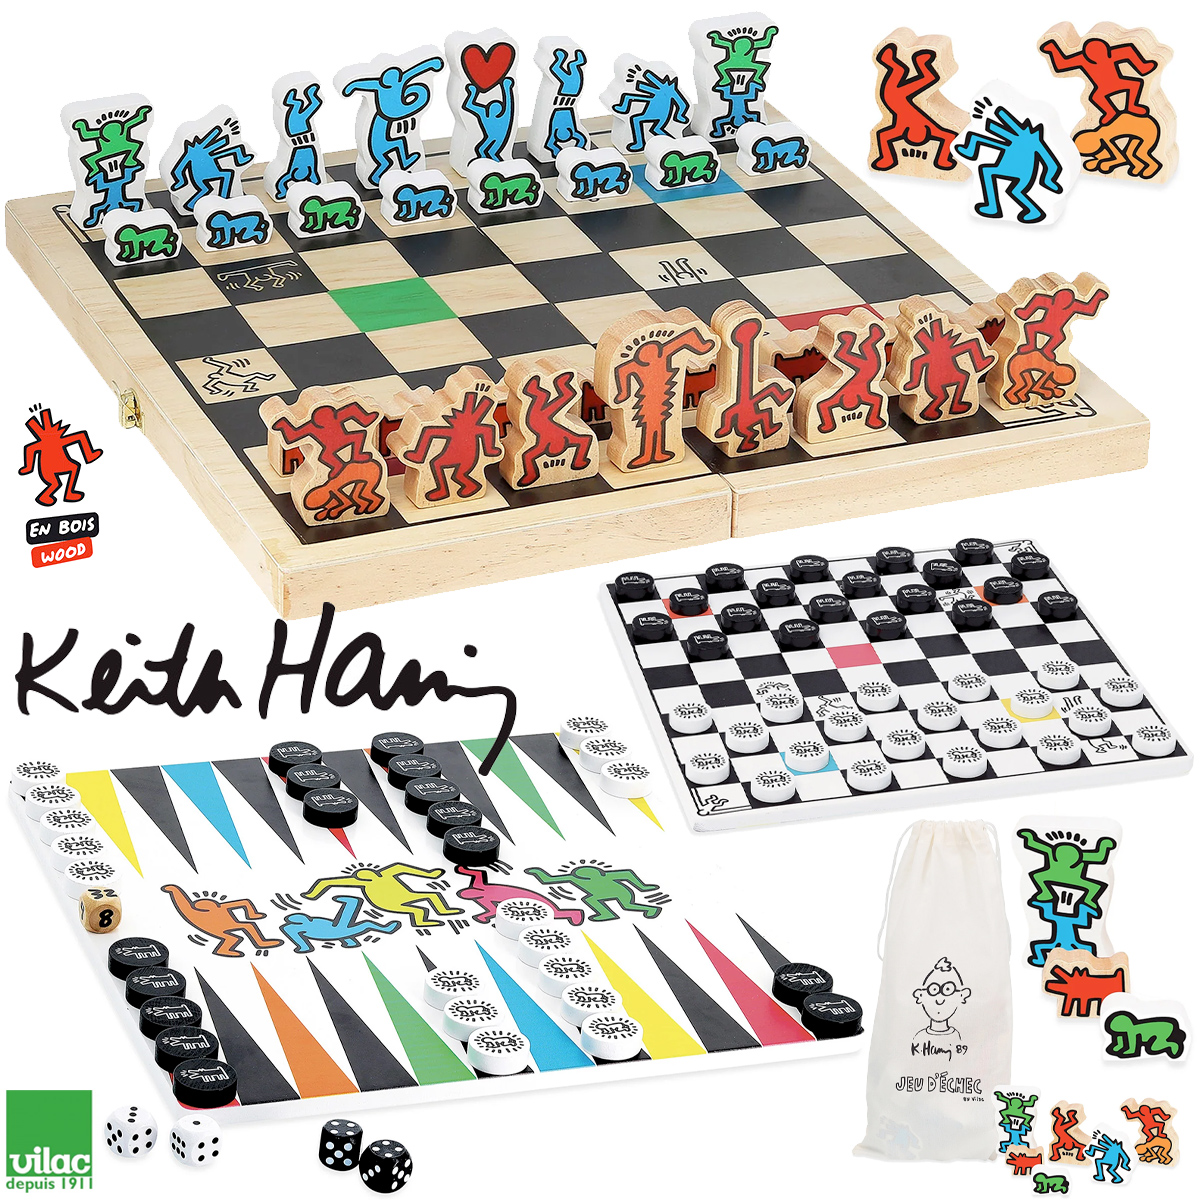 Jogos de Tabuleiro Keith Haring: Xadrez, Gamão e Damas